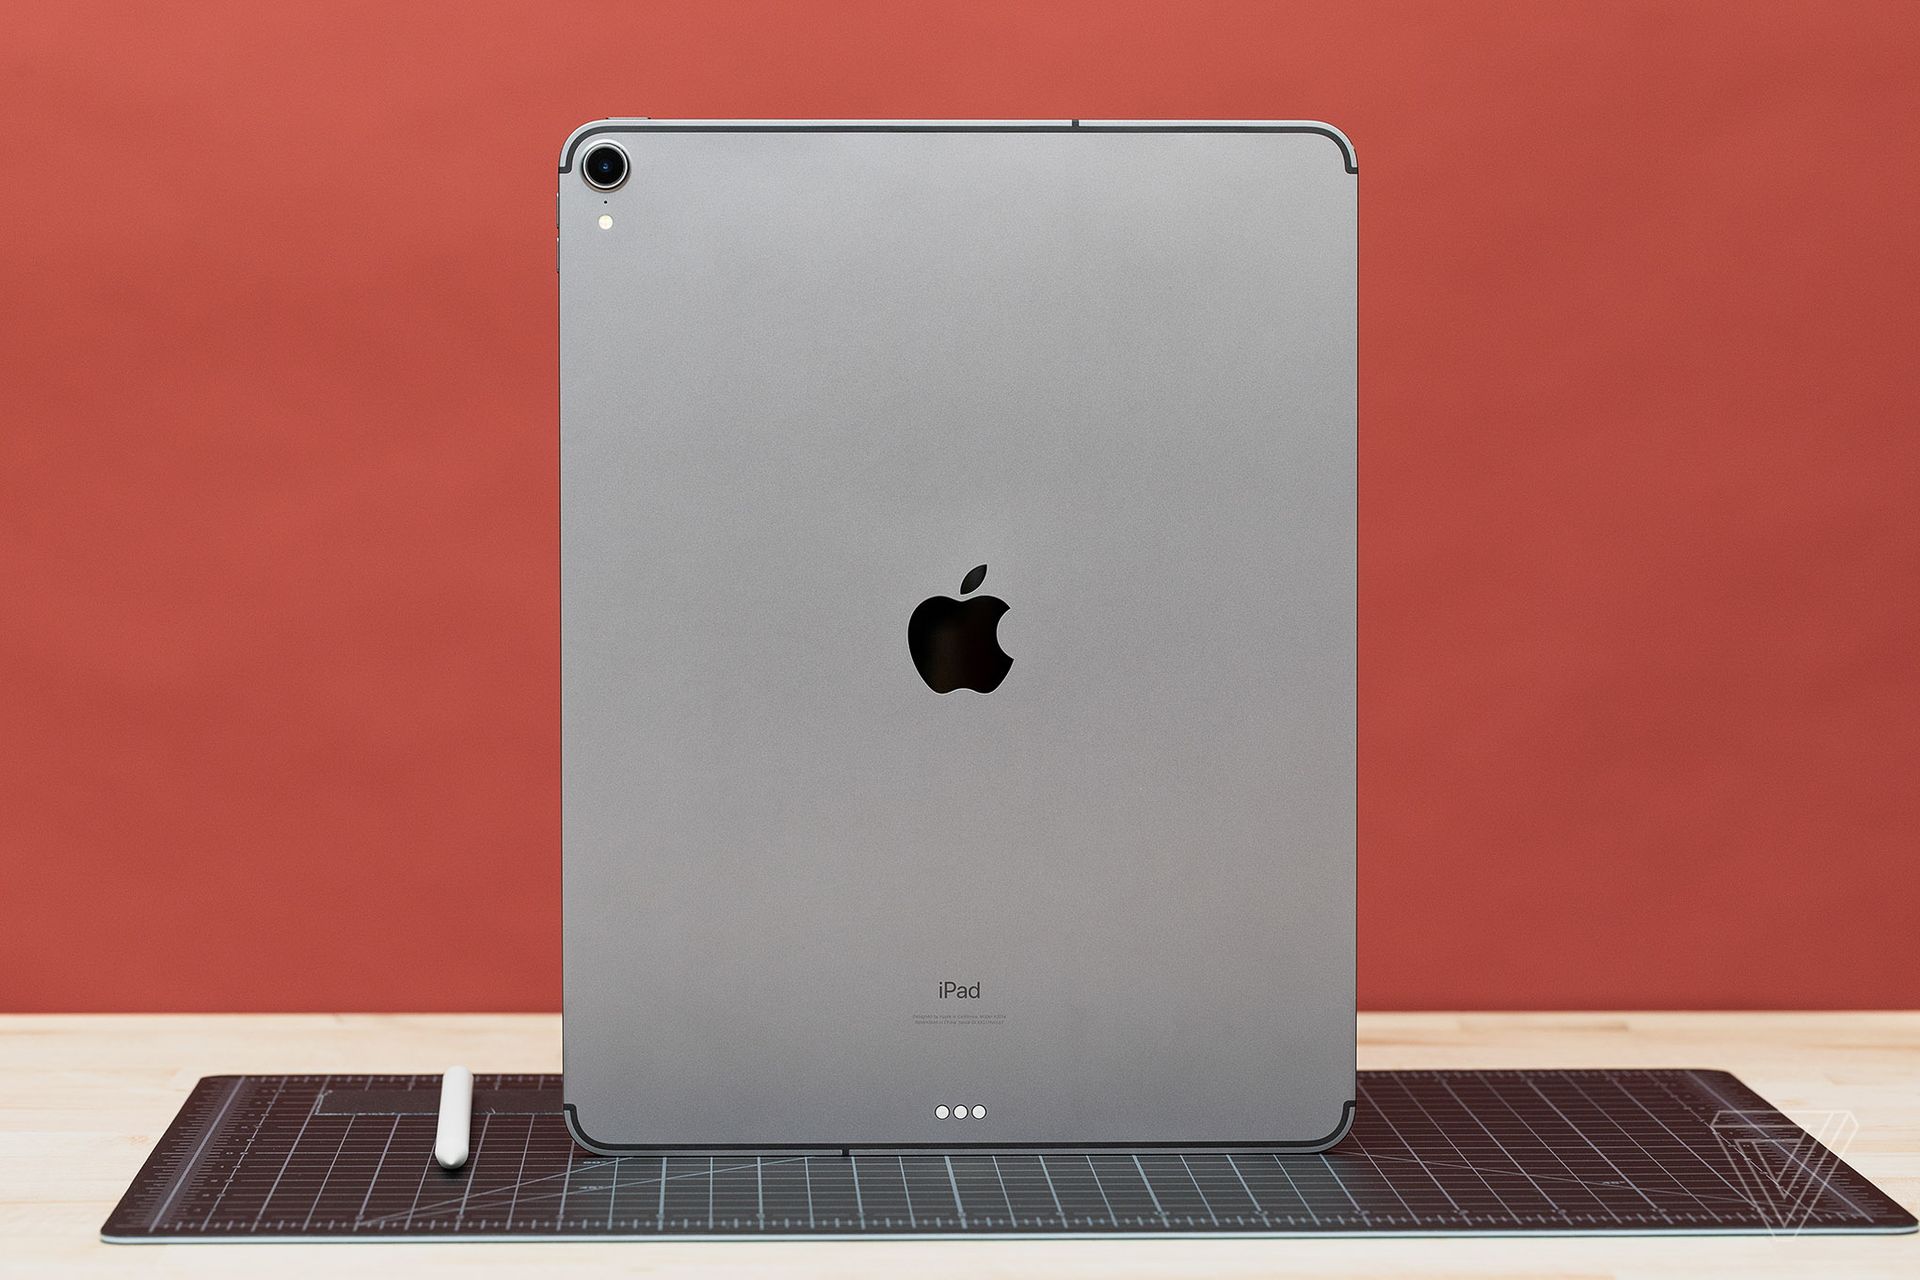 iPad Pro 2018 mạnh hơn laptop nhưng có thể thay thế được laptop?